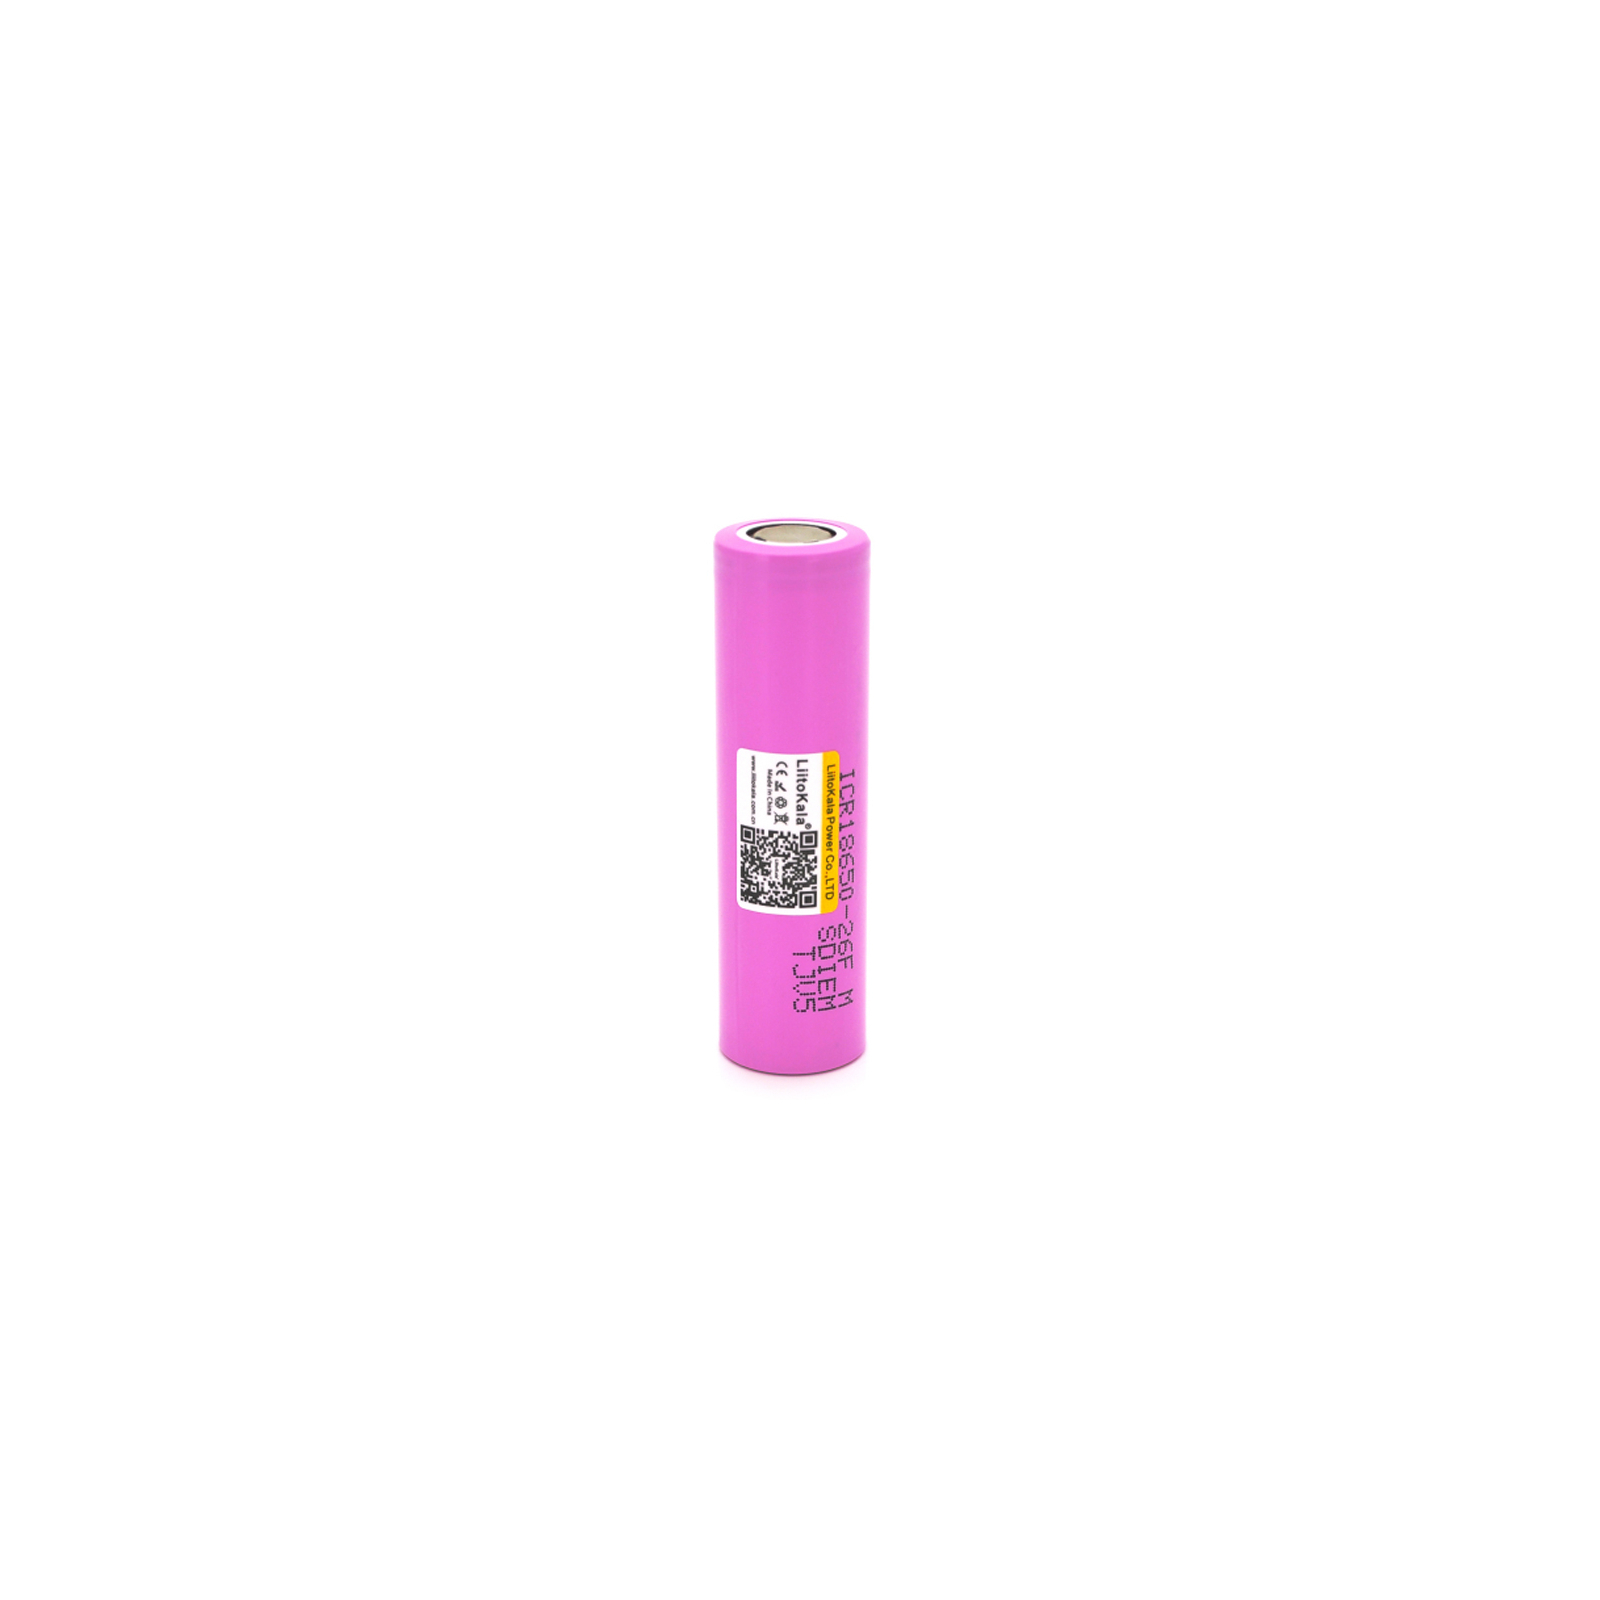 Аккумулятор 18650 Li-Ion 2600mah (2450-2650mah), 3.7V (2.75-4.2V), pink, PVC BOX Liitokala (Lii-26FM)